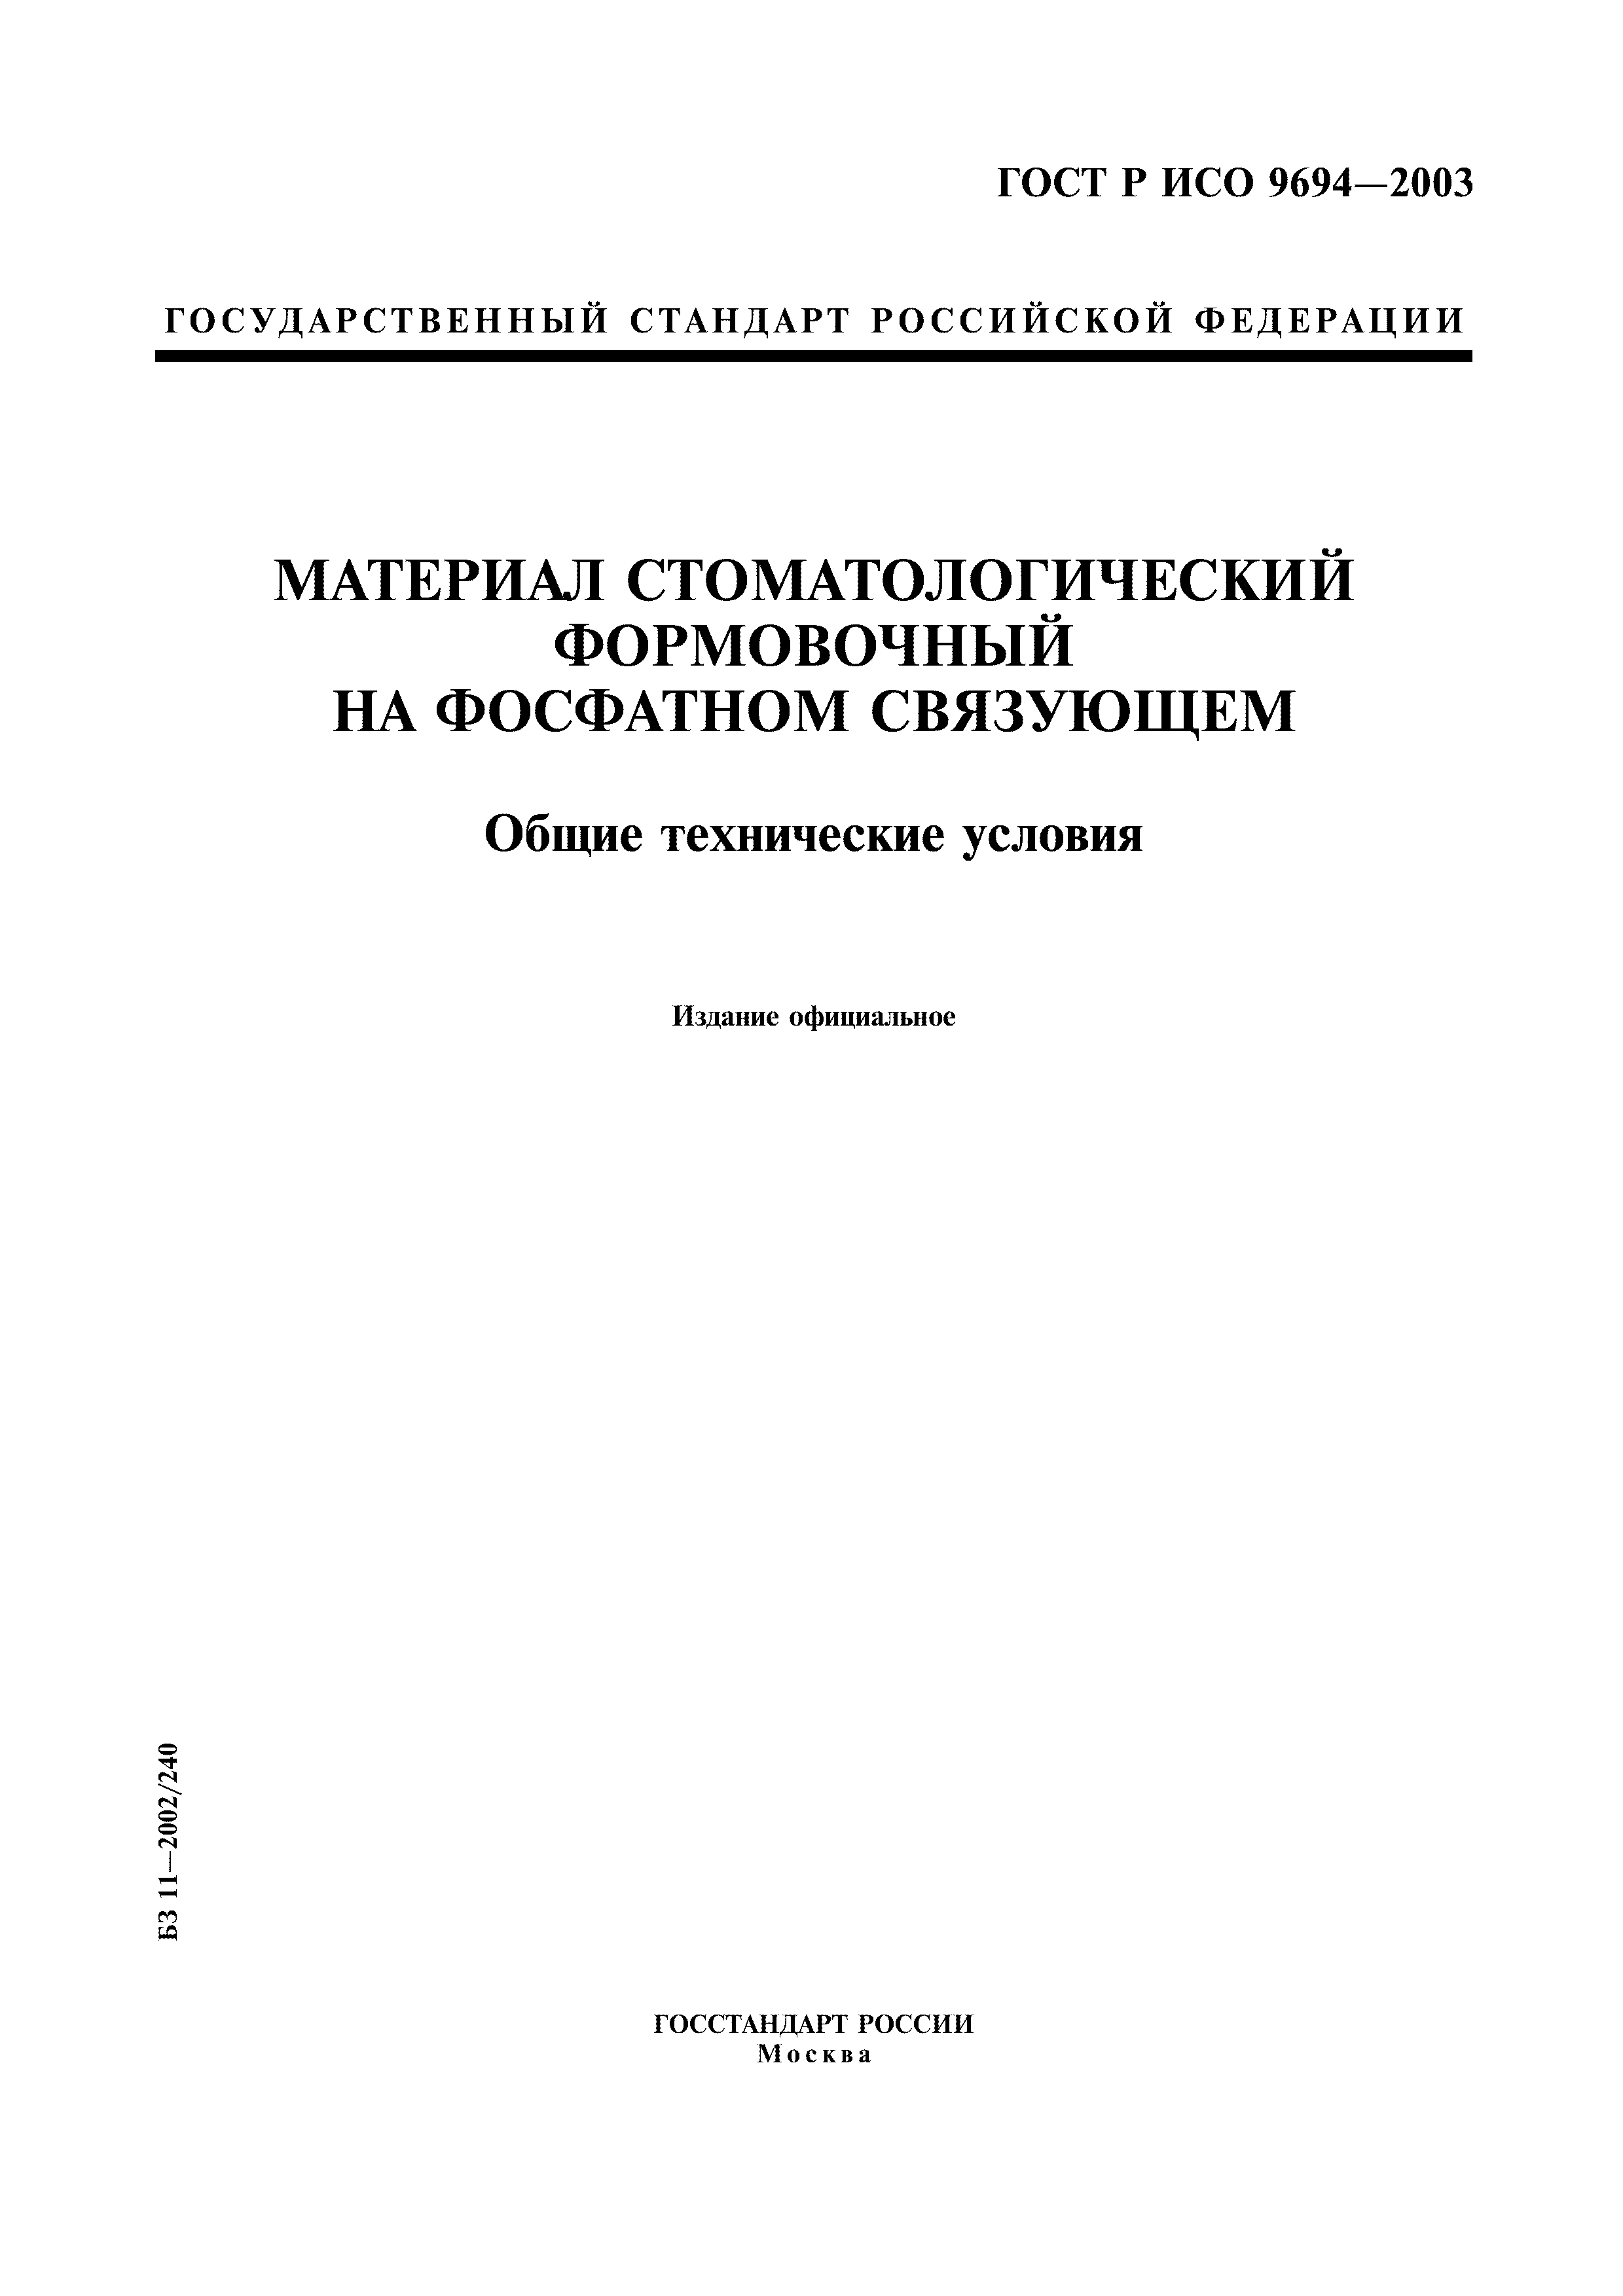 ГОСТ Р ИСО 9694-2003